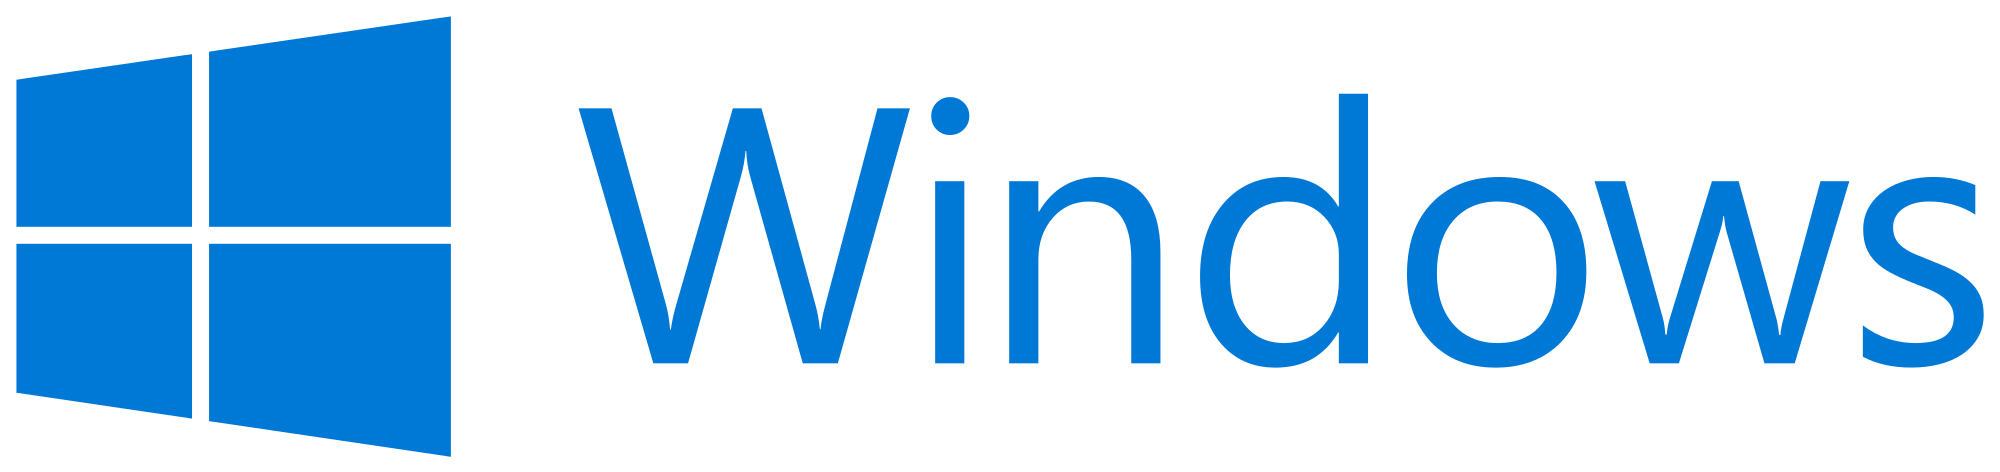 Windows Microsoft Free Download Image PNG Image